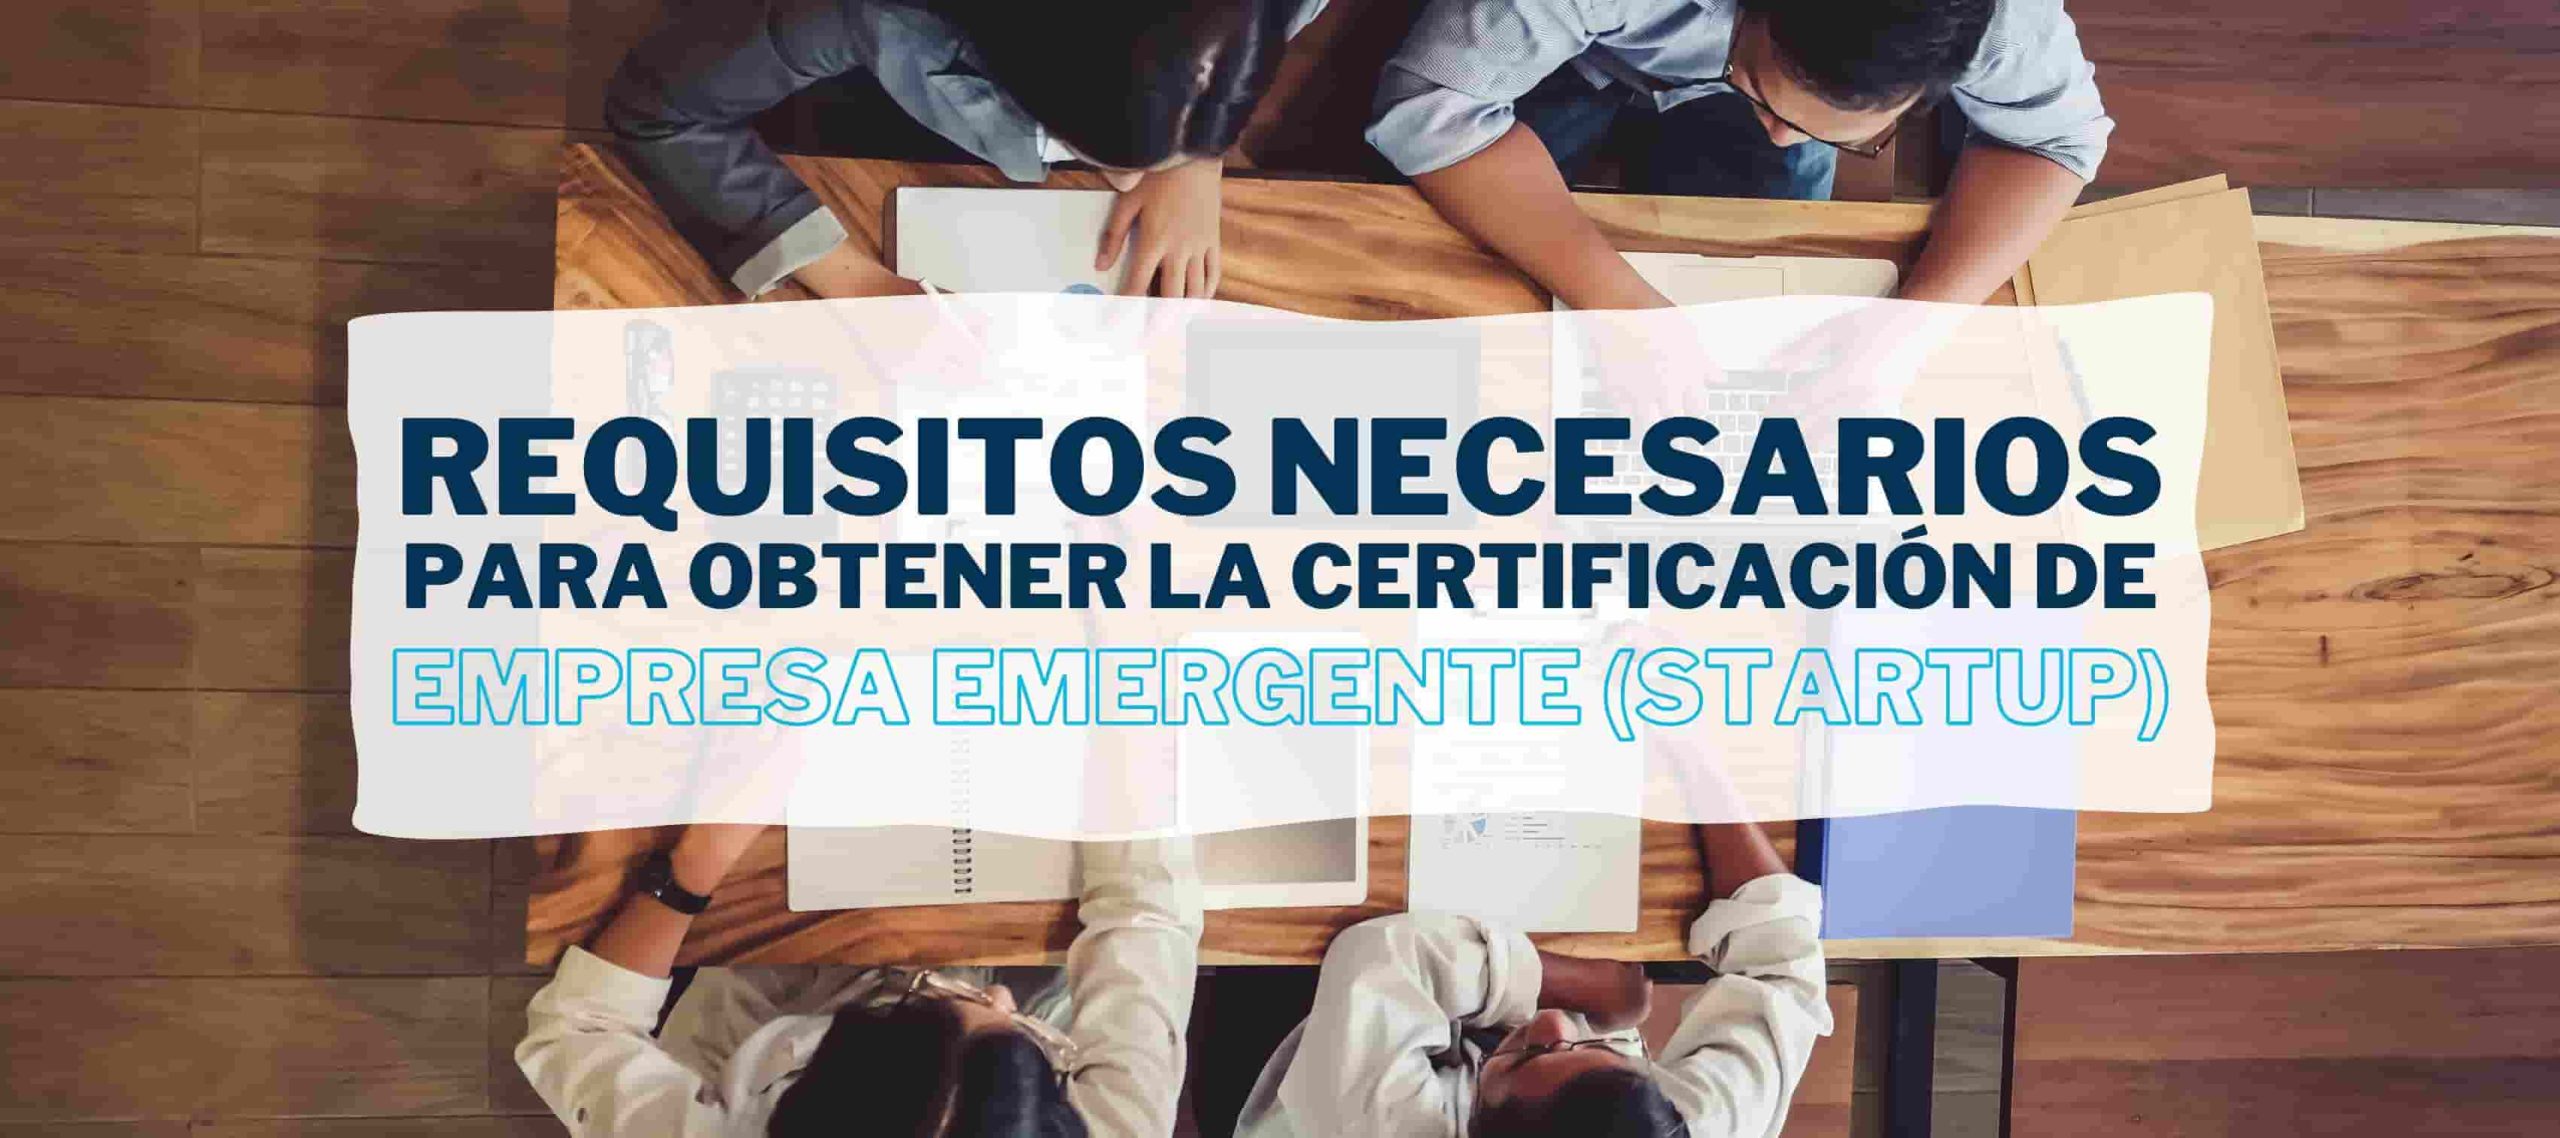 Equipo de trabajo de una Startup reunidos valorando los requisitos de certificación de empresa emergente por el Portal ENISA de acuerdo al artículo de Iniciativa Fiscal.